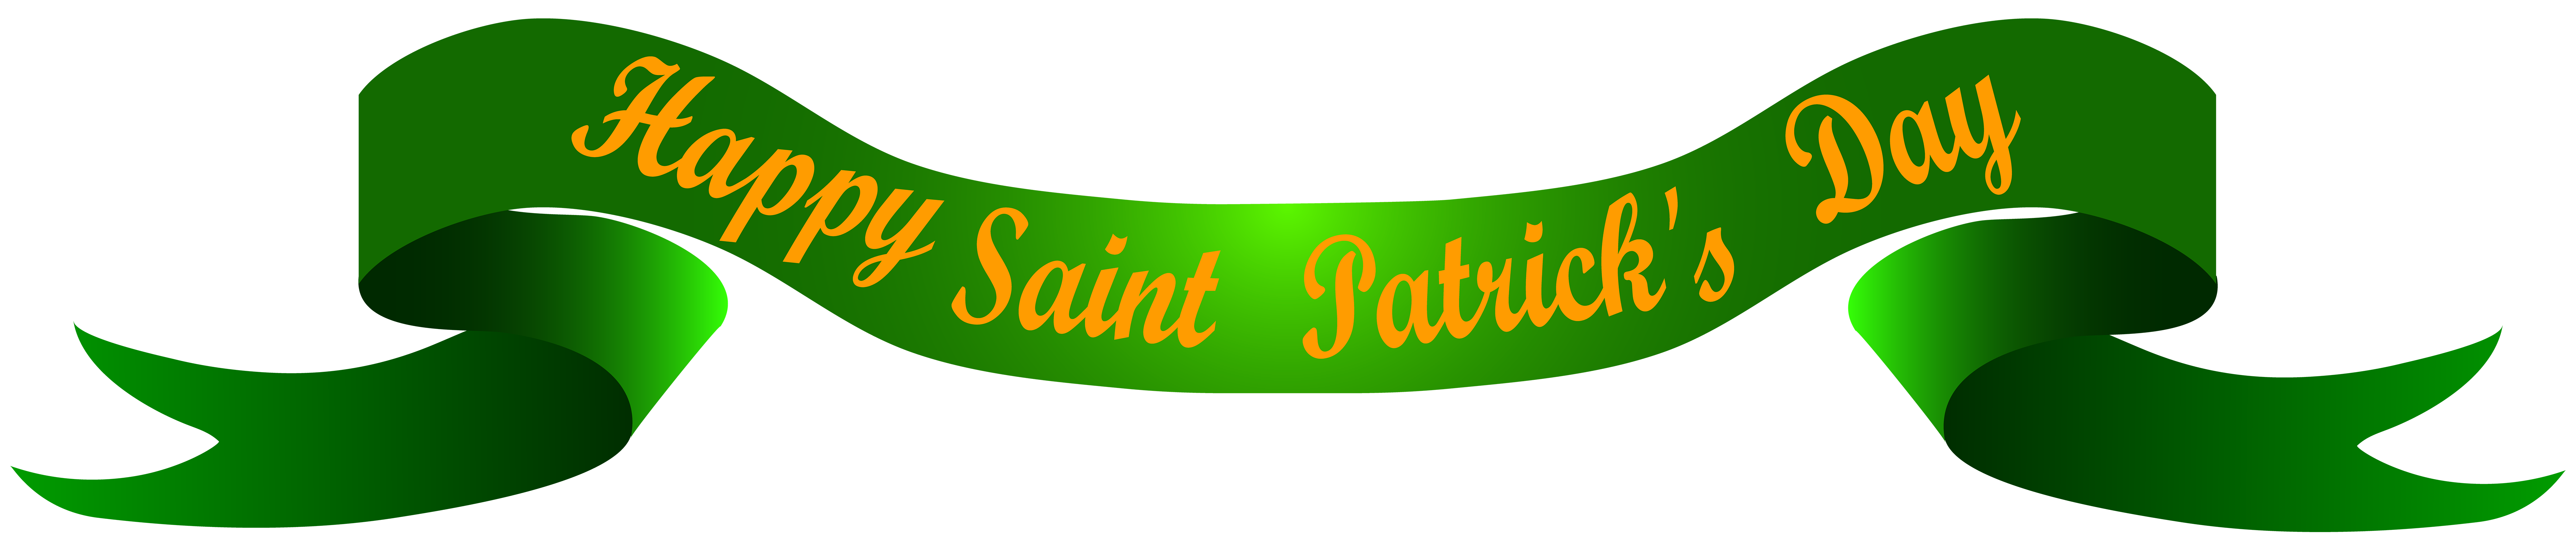 Patrick'S Saint Banner Transparent Day Happy Clipart.